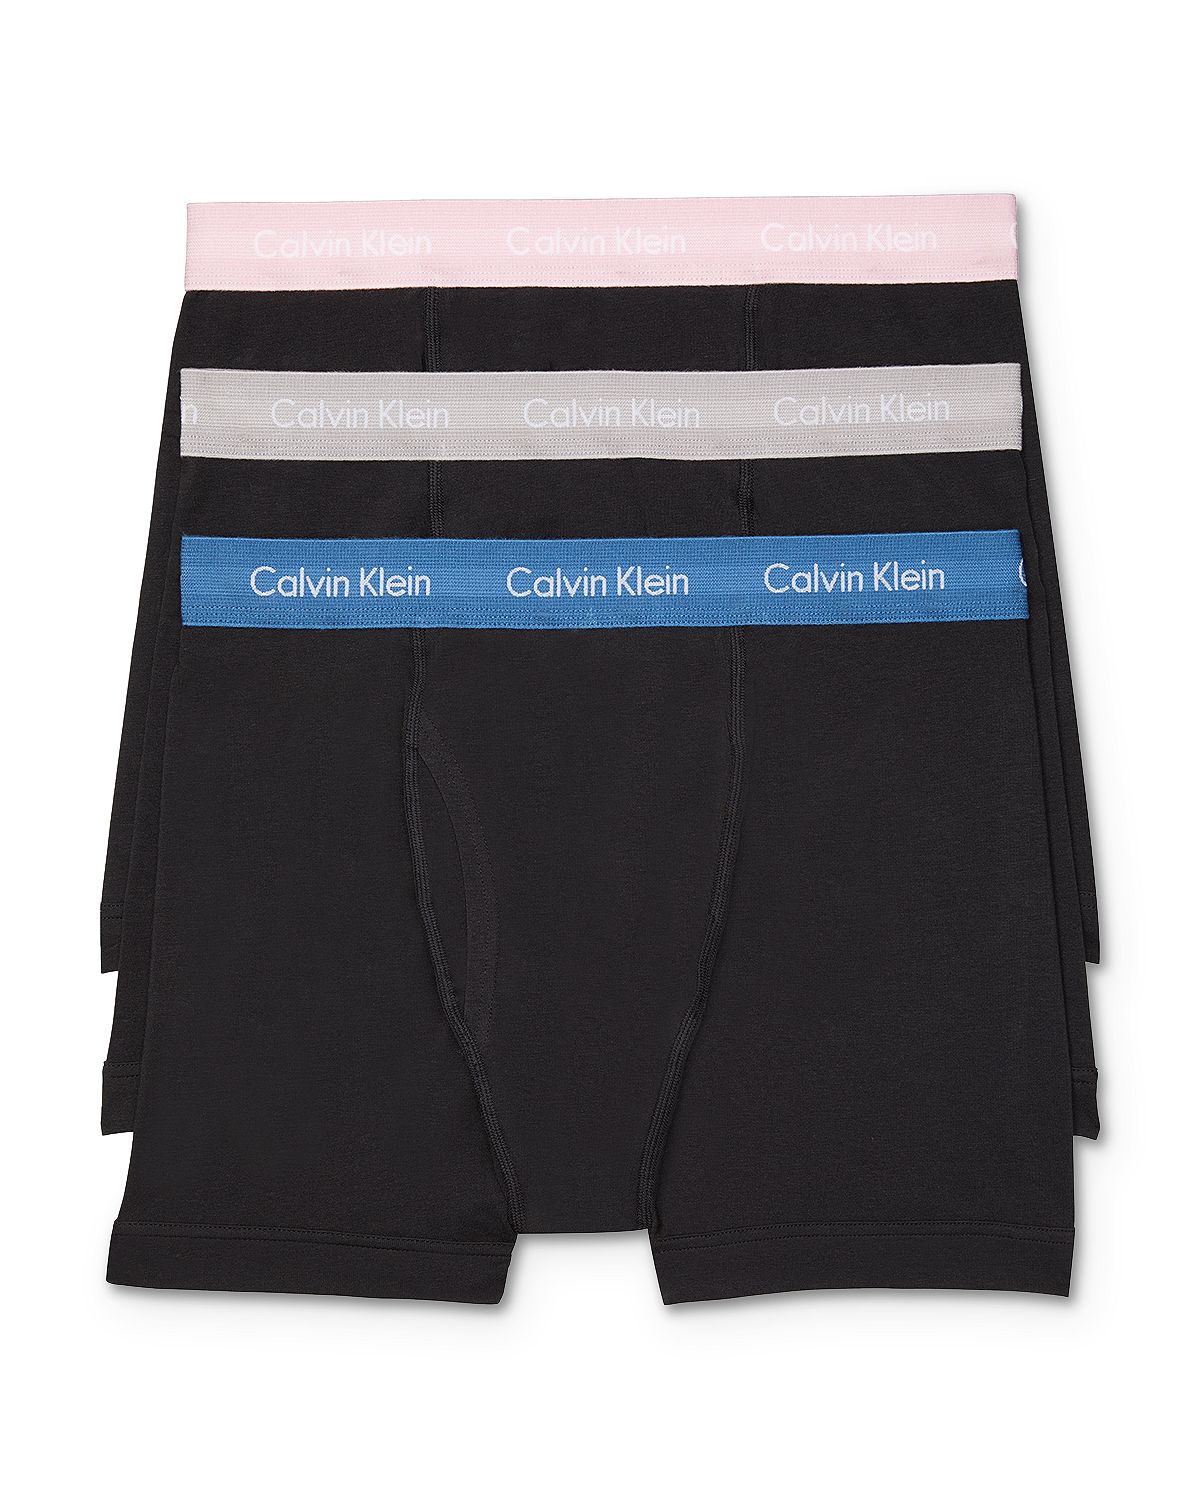 Calvin Klein Cotton Stretch Boxer Briefs Pack Of 3 Black/Gray/Pink/Blu –  CheapUndies